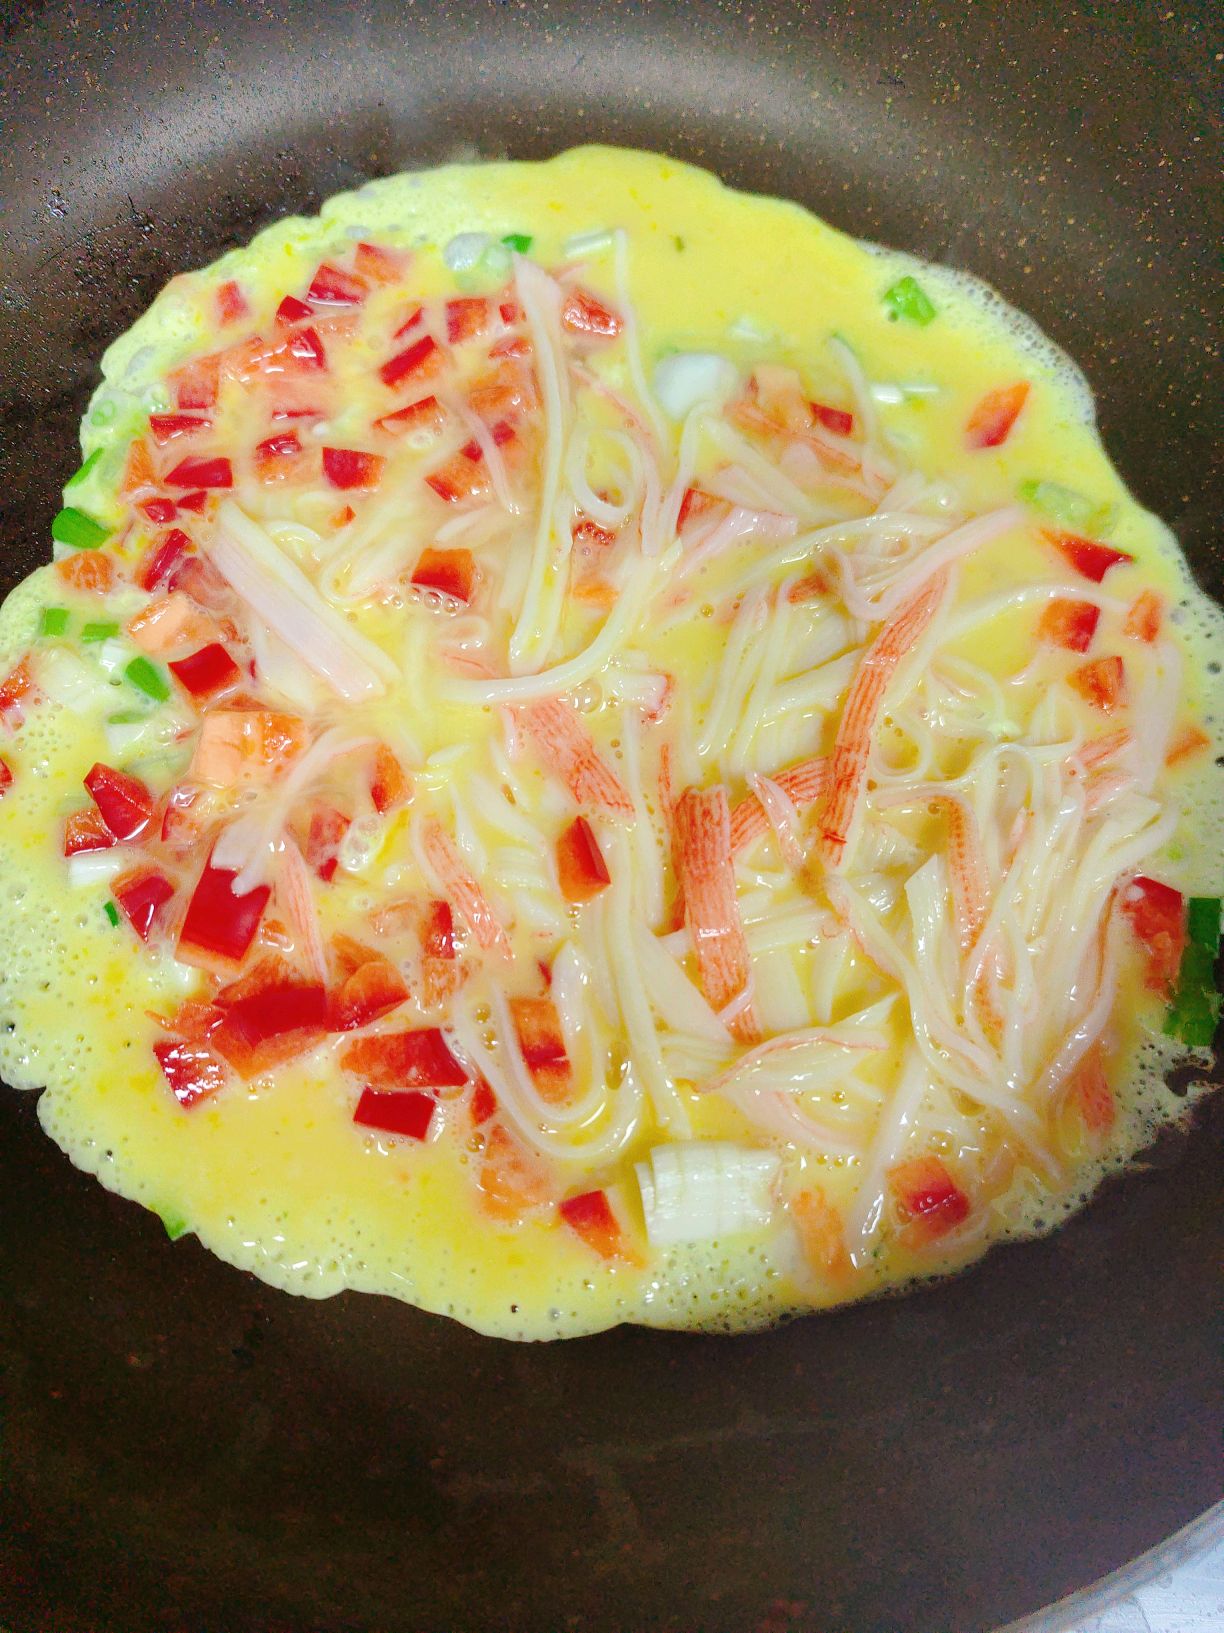 美味情缘: 蟹柳炒蛋 Stir-fried Crab Fillet with Egg